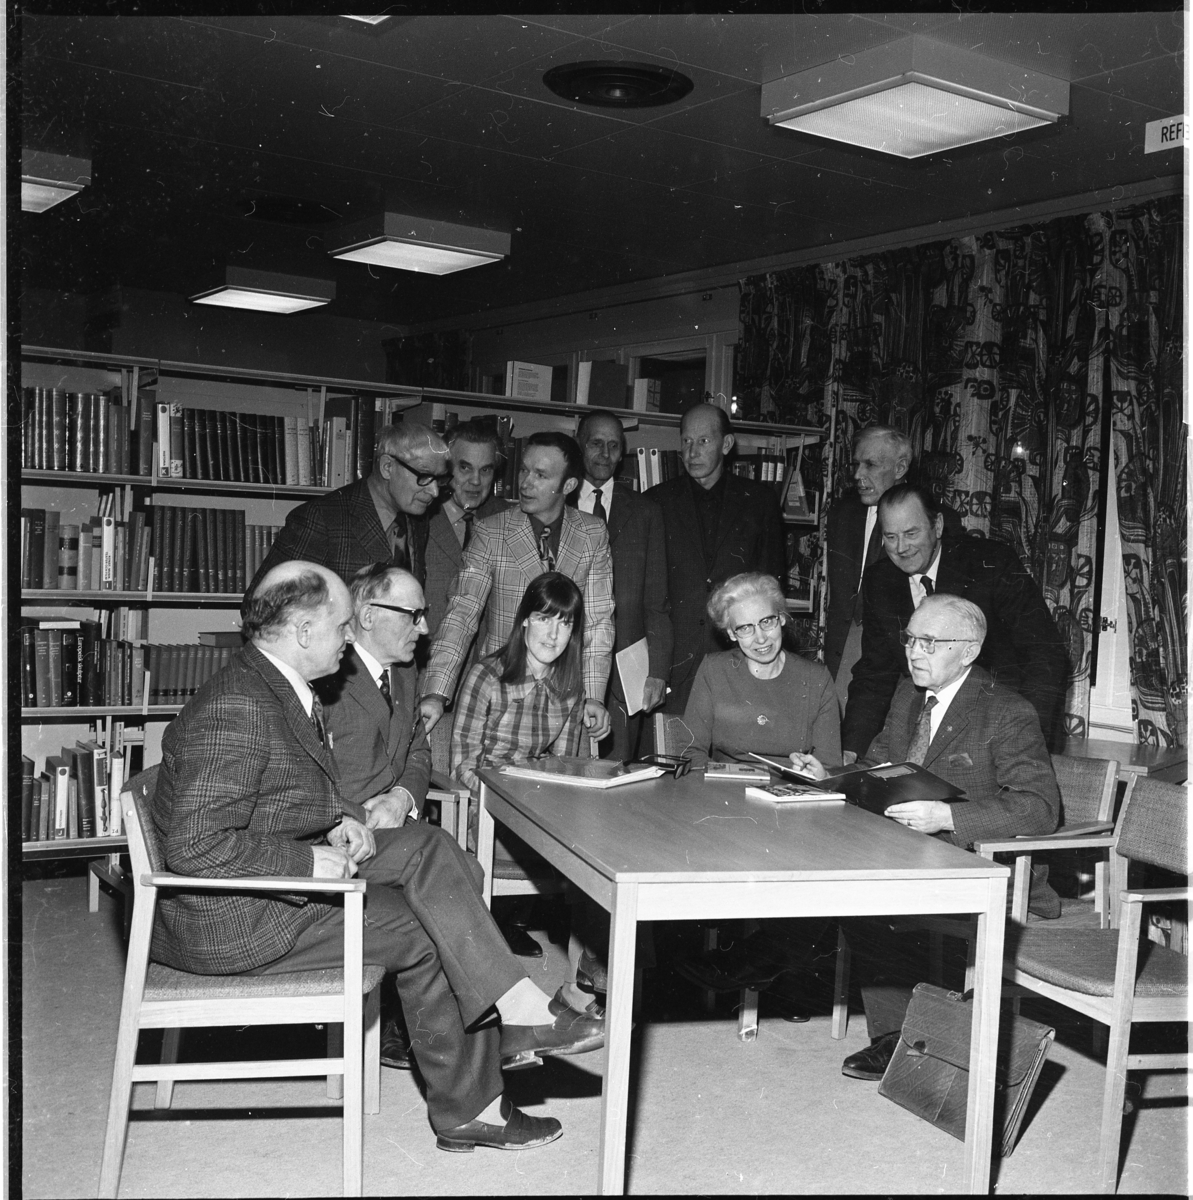 Två kvinnor och tio män stående och sittande runt ett bord. Fokus är riktat mot en man sittande till höger: Sven Simonsson. Stående som två från vänster är Sten Grennfelt. Kvinnan till höger är Astrid Wiråker och bakom henne står hennes man sågverksägaren Bengt Wiråker. 
Det är släktforskning, möjligen en kurs, under ledning av Sven Simonsson. De befinner sig möjligen i dåvarande biblioteket i Grenna Medborgargård.